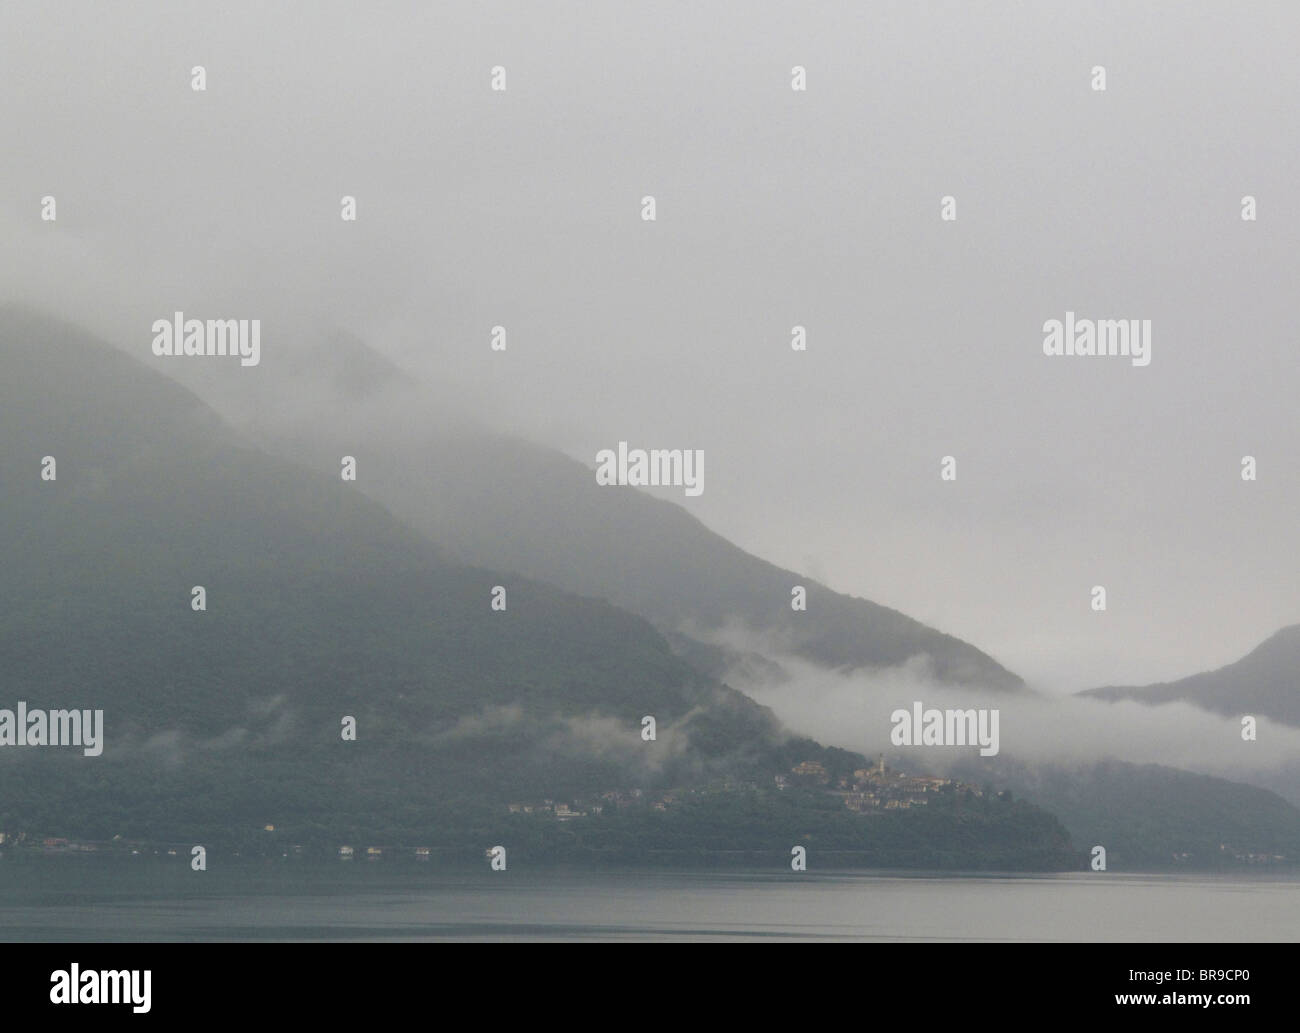 Dopo la pioggia - Villaggio di pino sulla sponda del lago maggiore - Lombardia - Italia Foto Stock